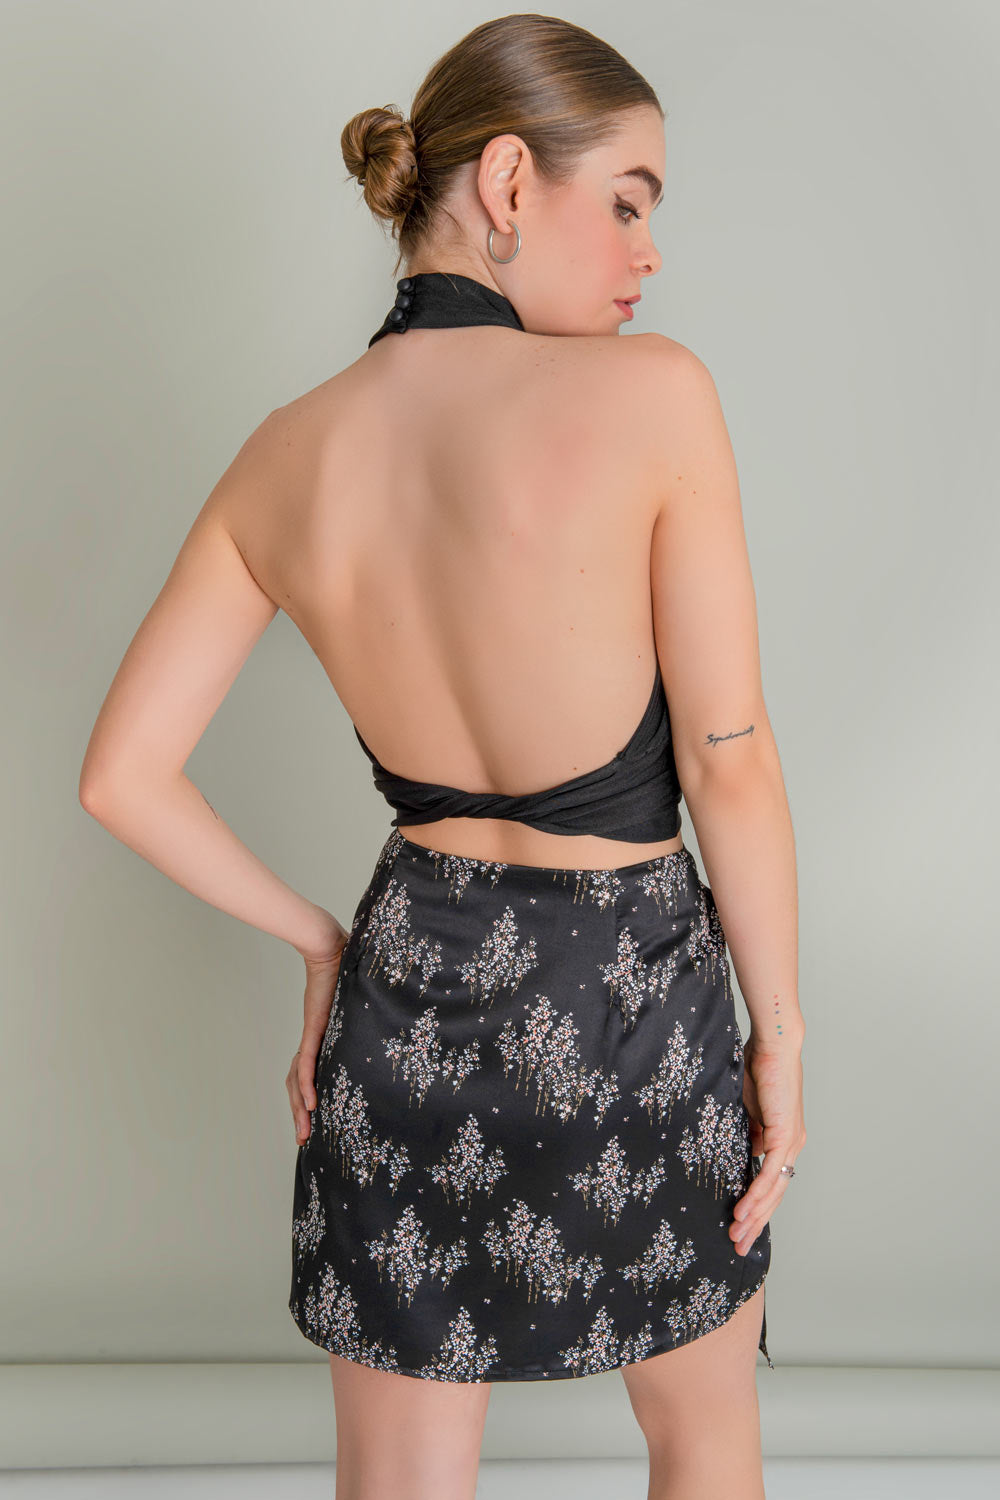 Falda corta satinada de estampado floral, corte en a, cintura alta, cruzado frontal con plisado lateral y nudo decorativo. Cierre lateral con cremallera oculta.